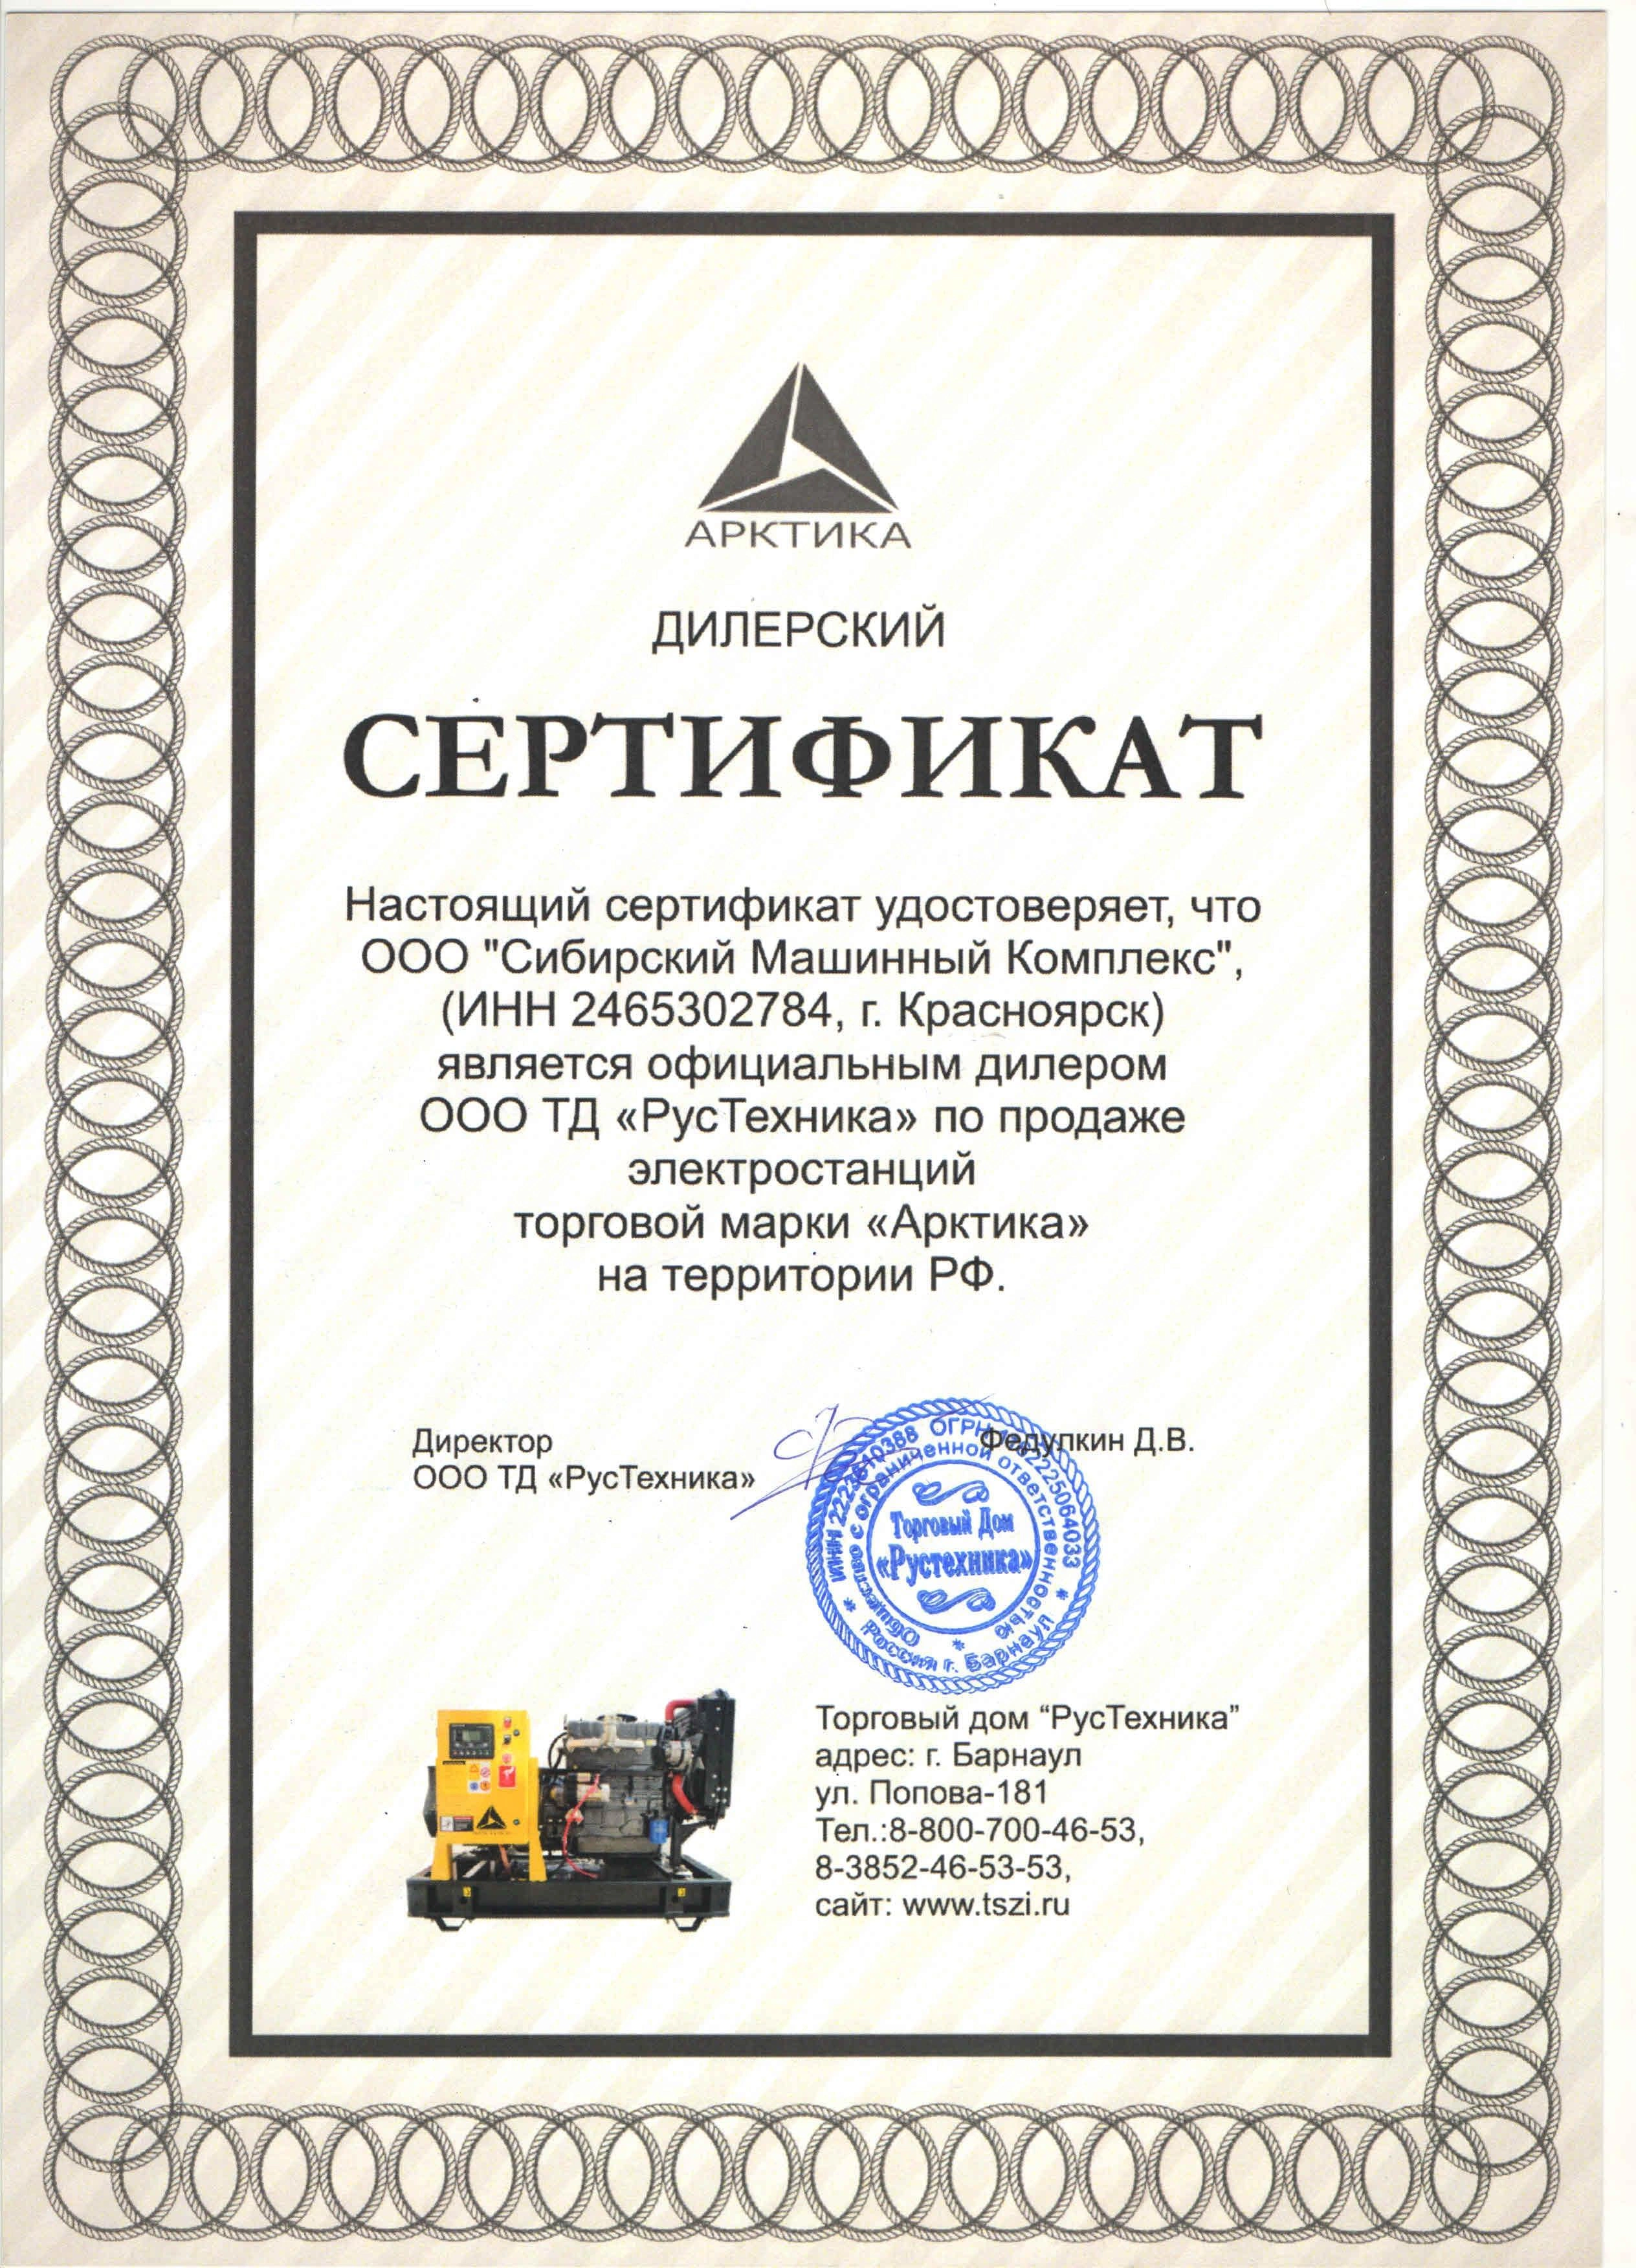 Сертификат дилерства ООО ТД «РусТехника» – СМК г. Норильск